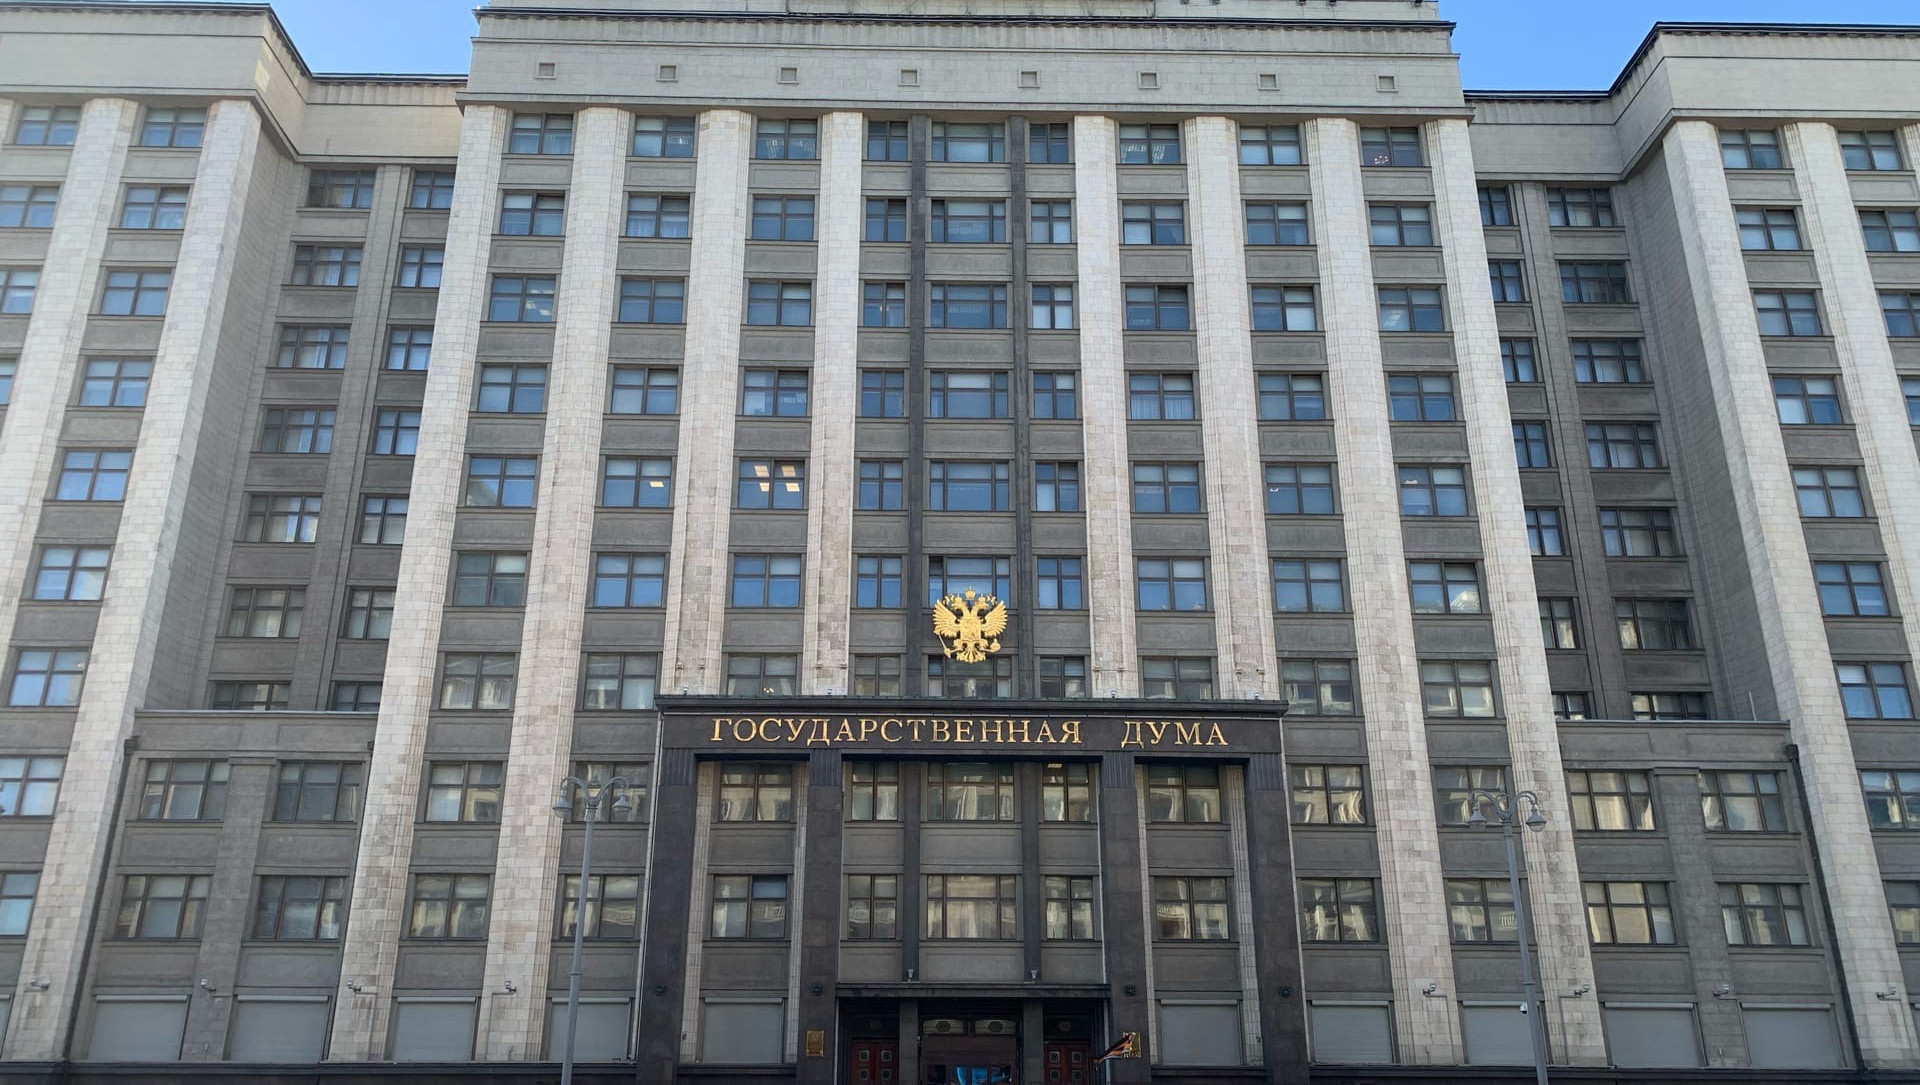 Міністерство соцiальної політики України